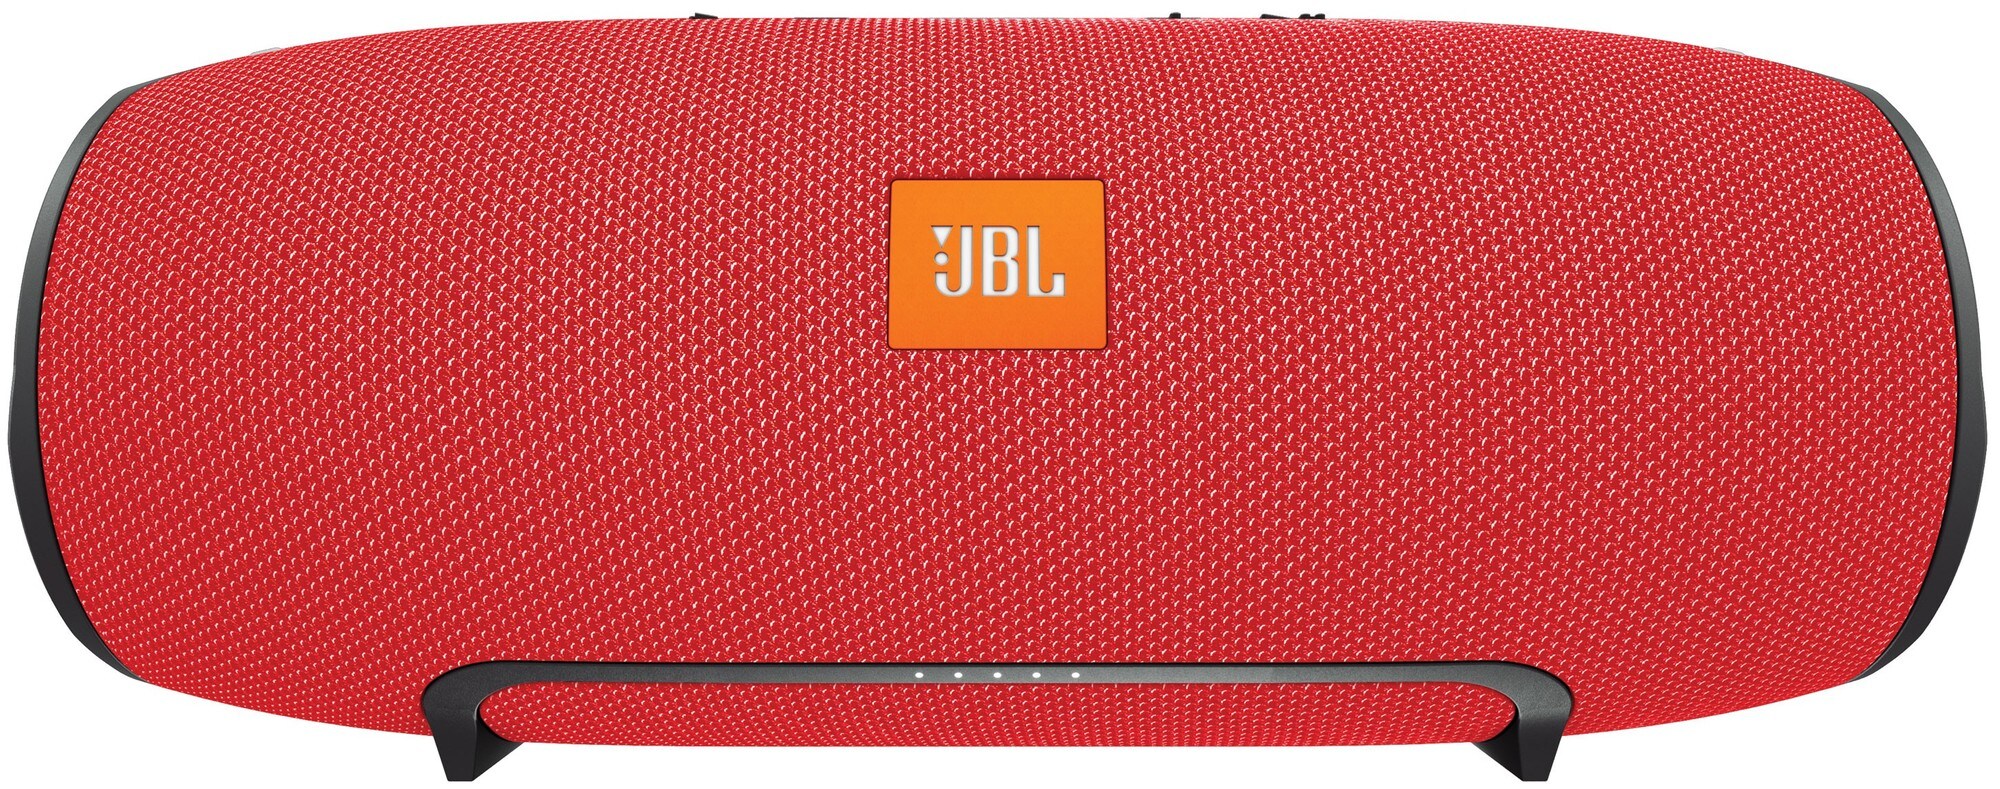 JBL Xtreme langaton kaiutin (punainen) - Gigantti verkkokauppa